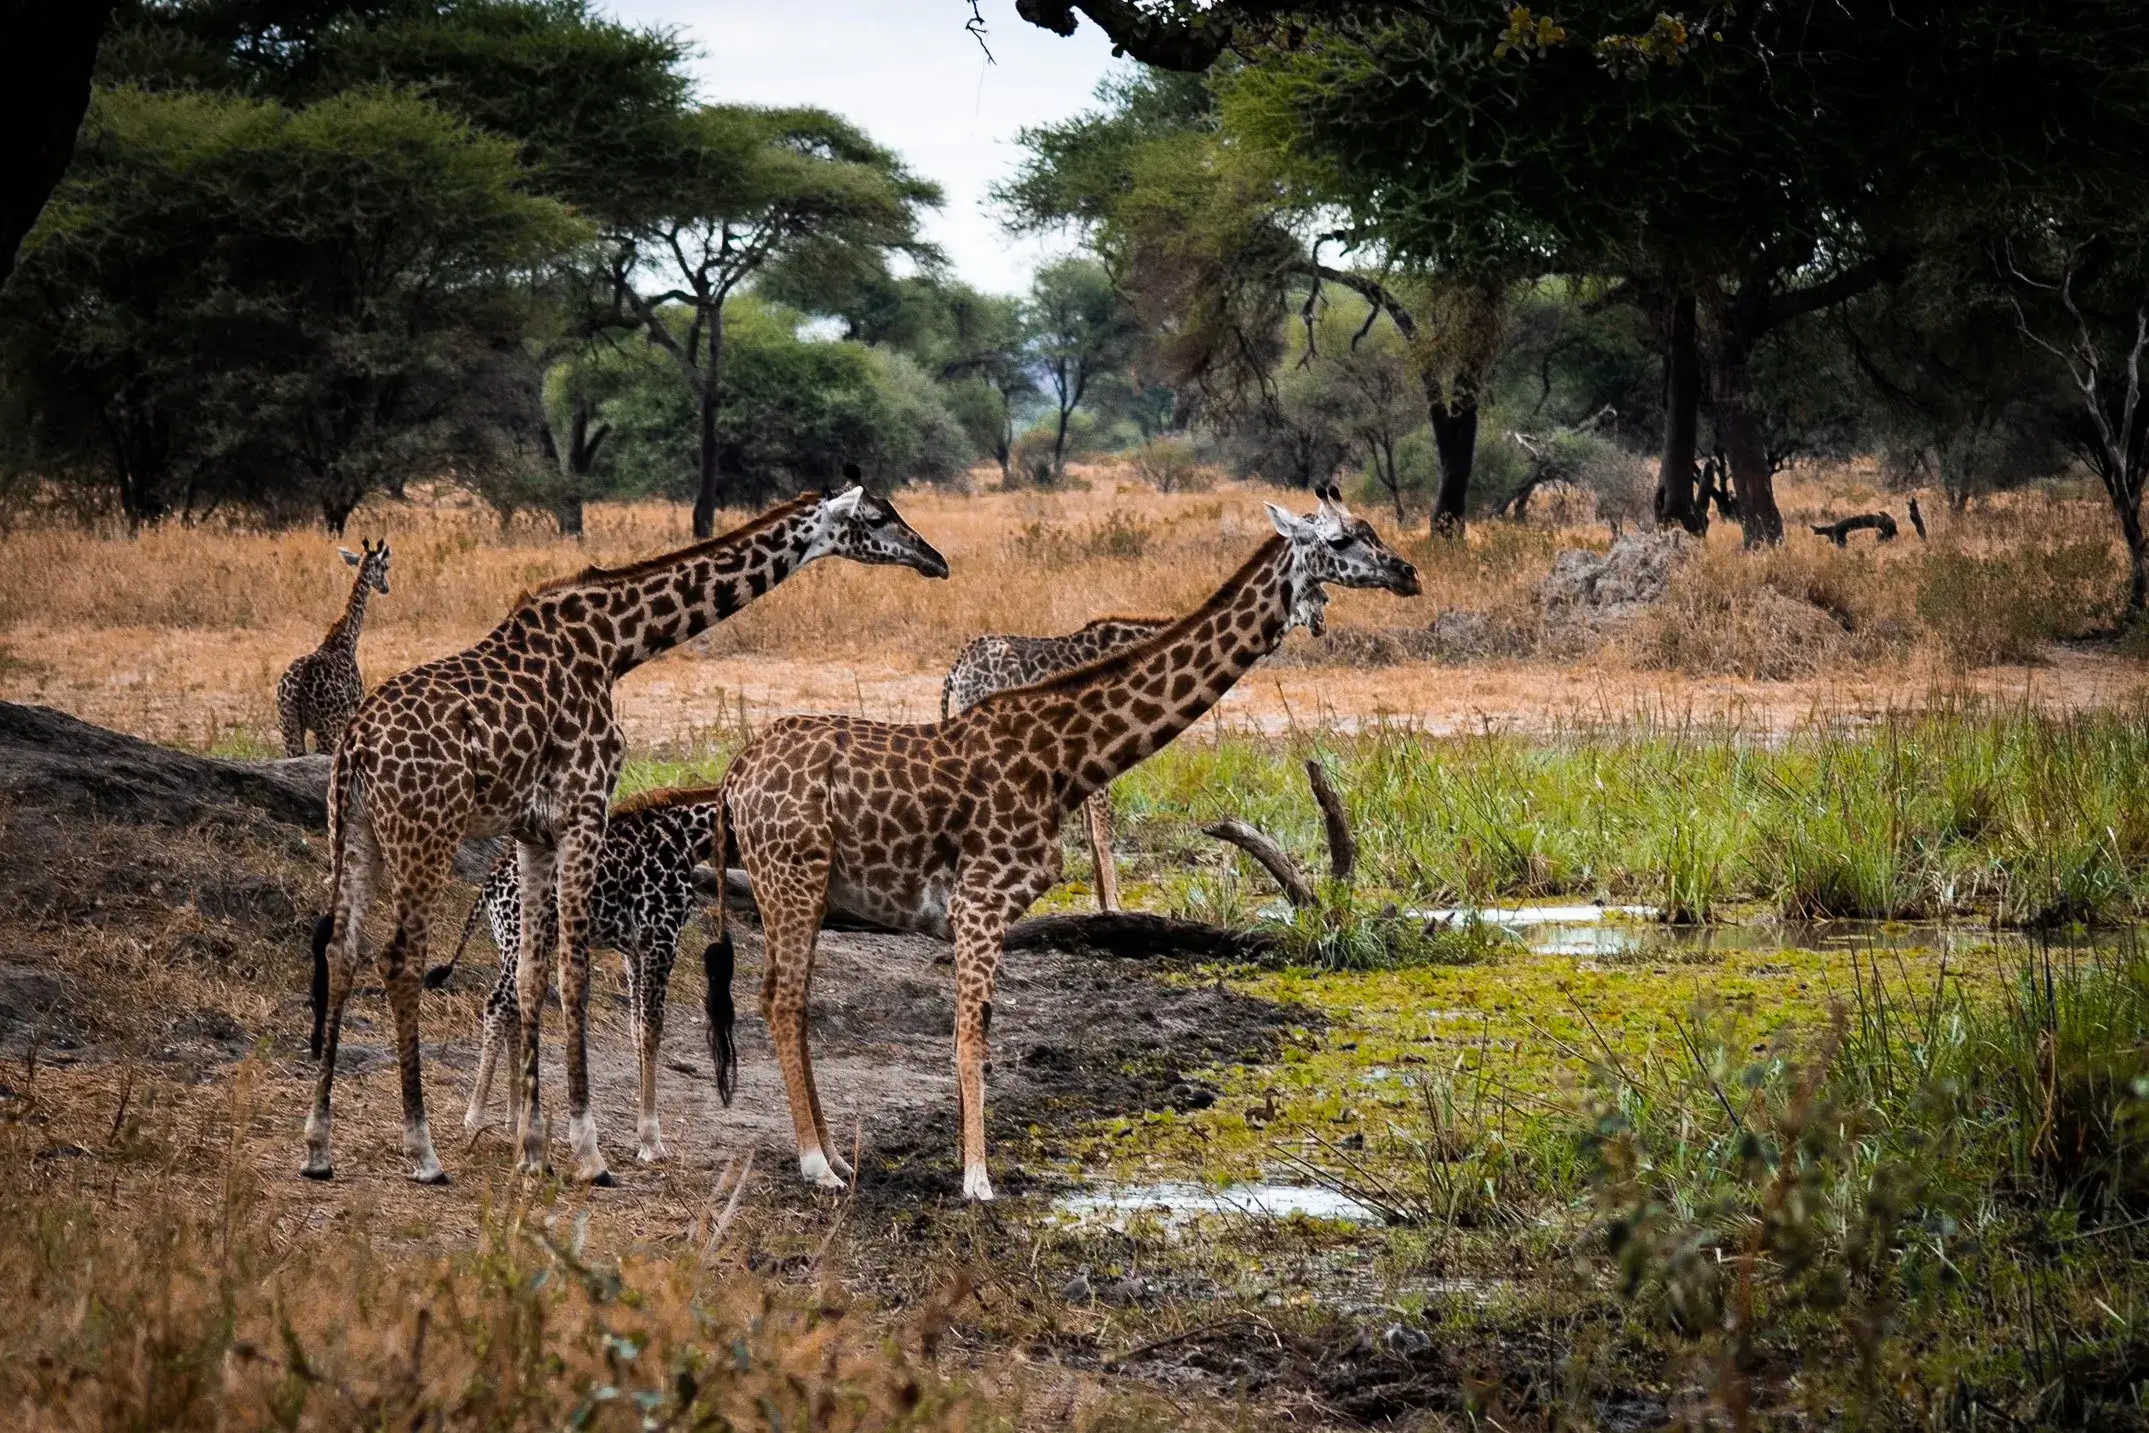 A herd of giraffe's from Tanzanian national park